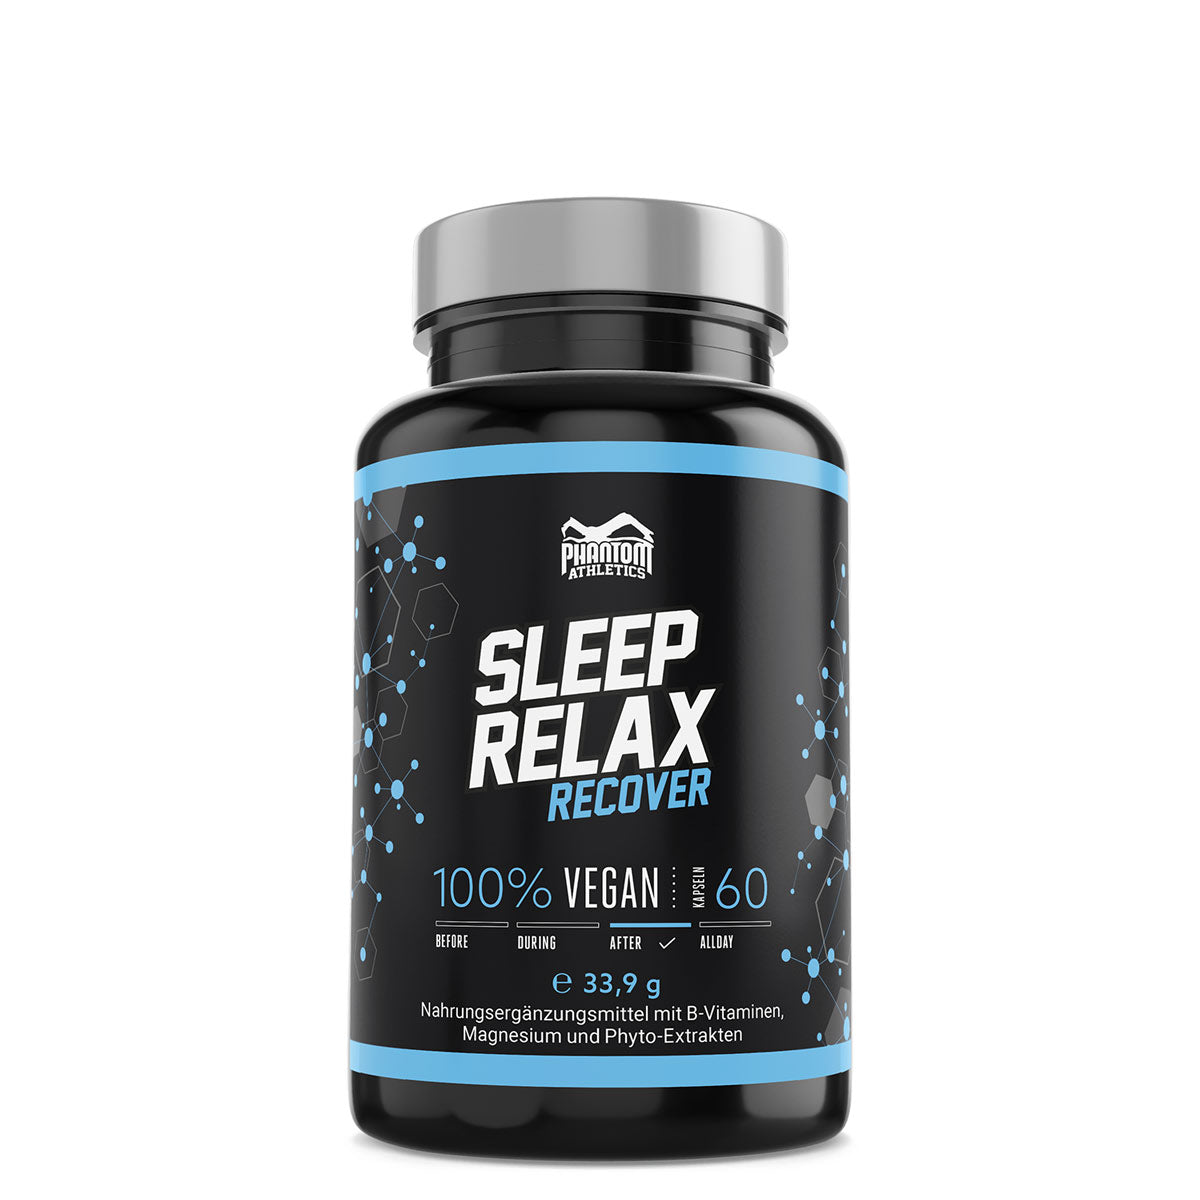 Das Phantom Sleep and Relax Supplement für eine bessere Regeneration im Kampfsport.